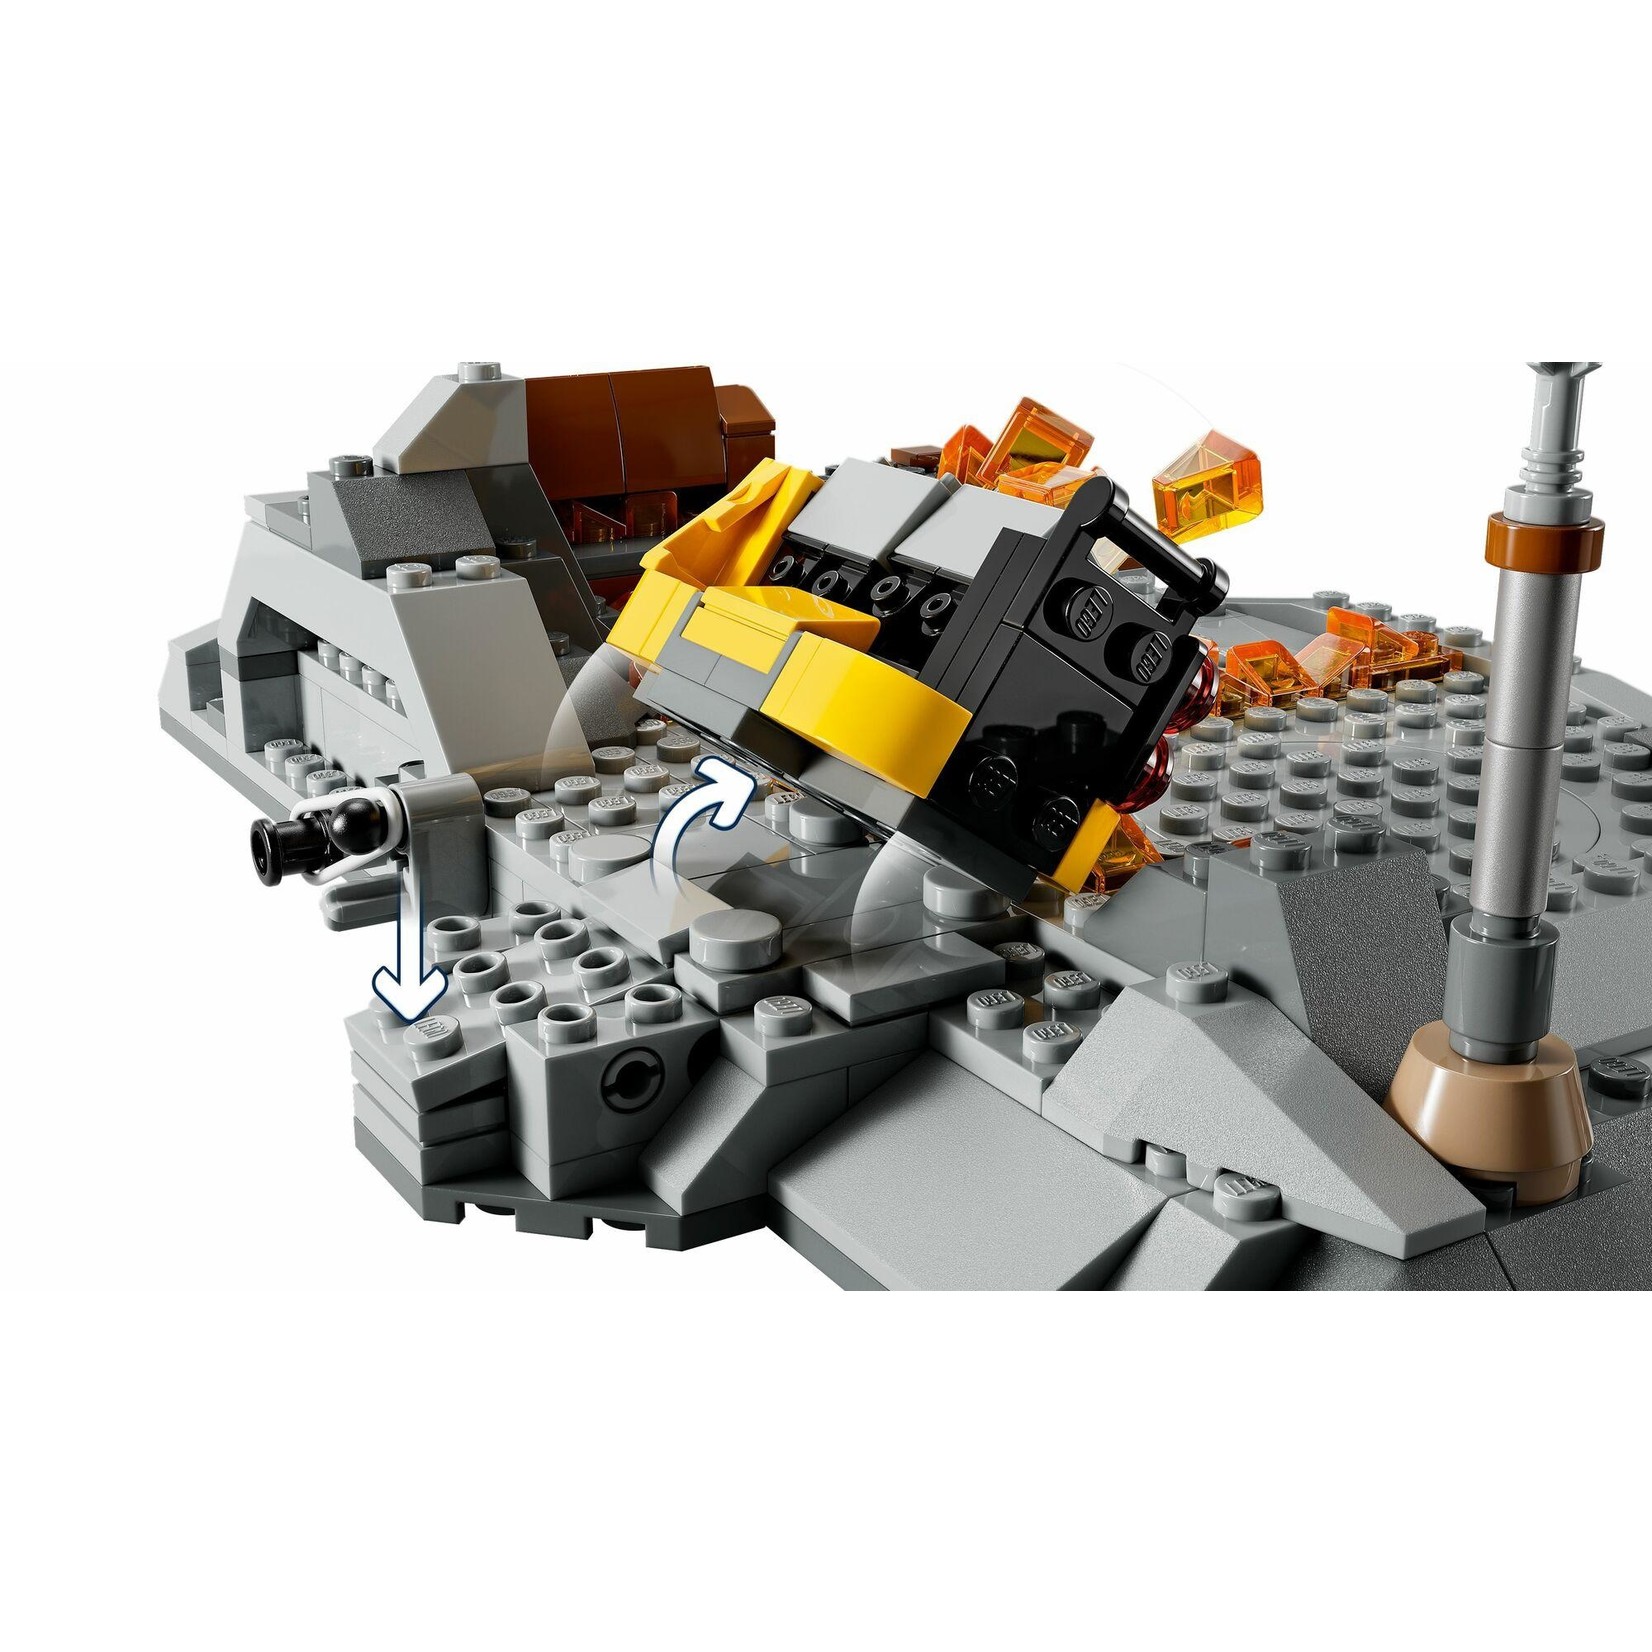 LEGO LEGO Star Wars Obi-Wan Kenobi vs Darth Vader (75334)